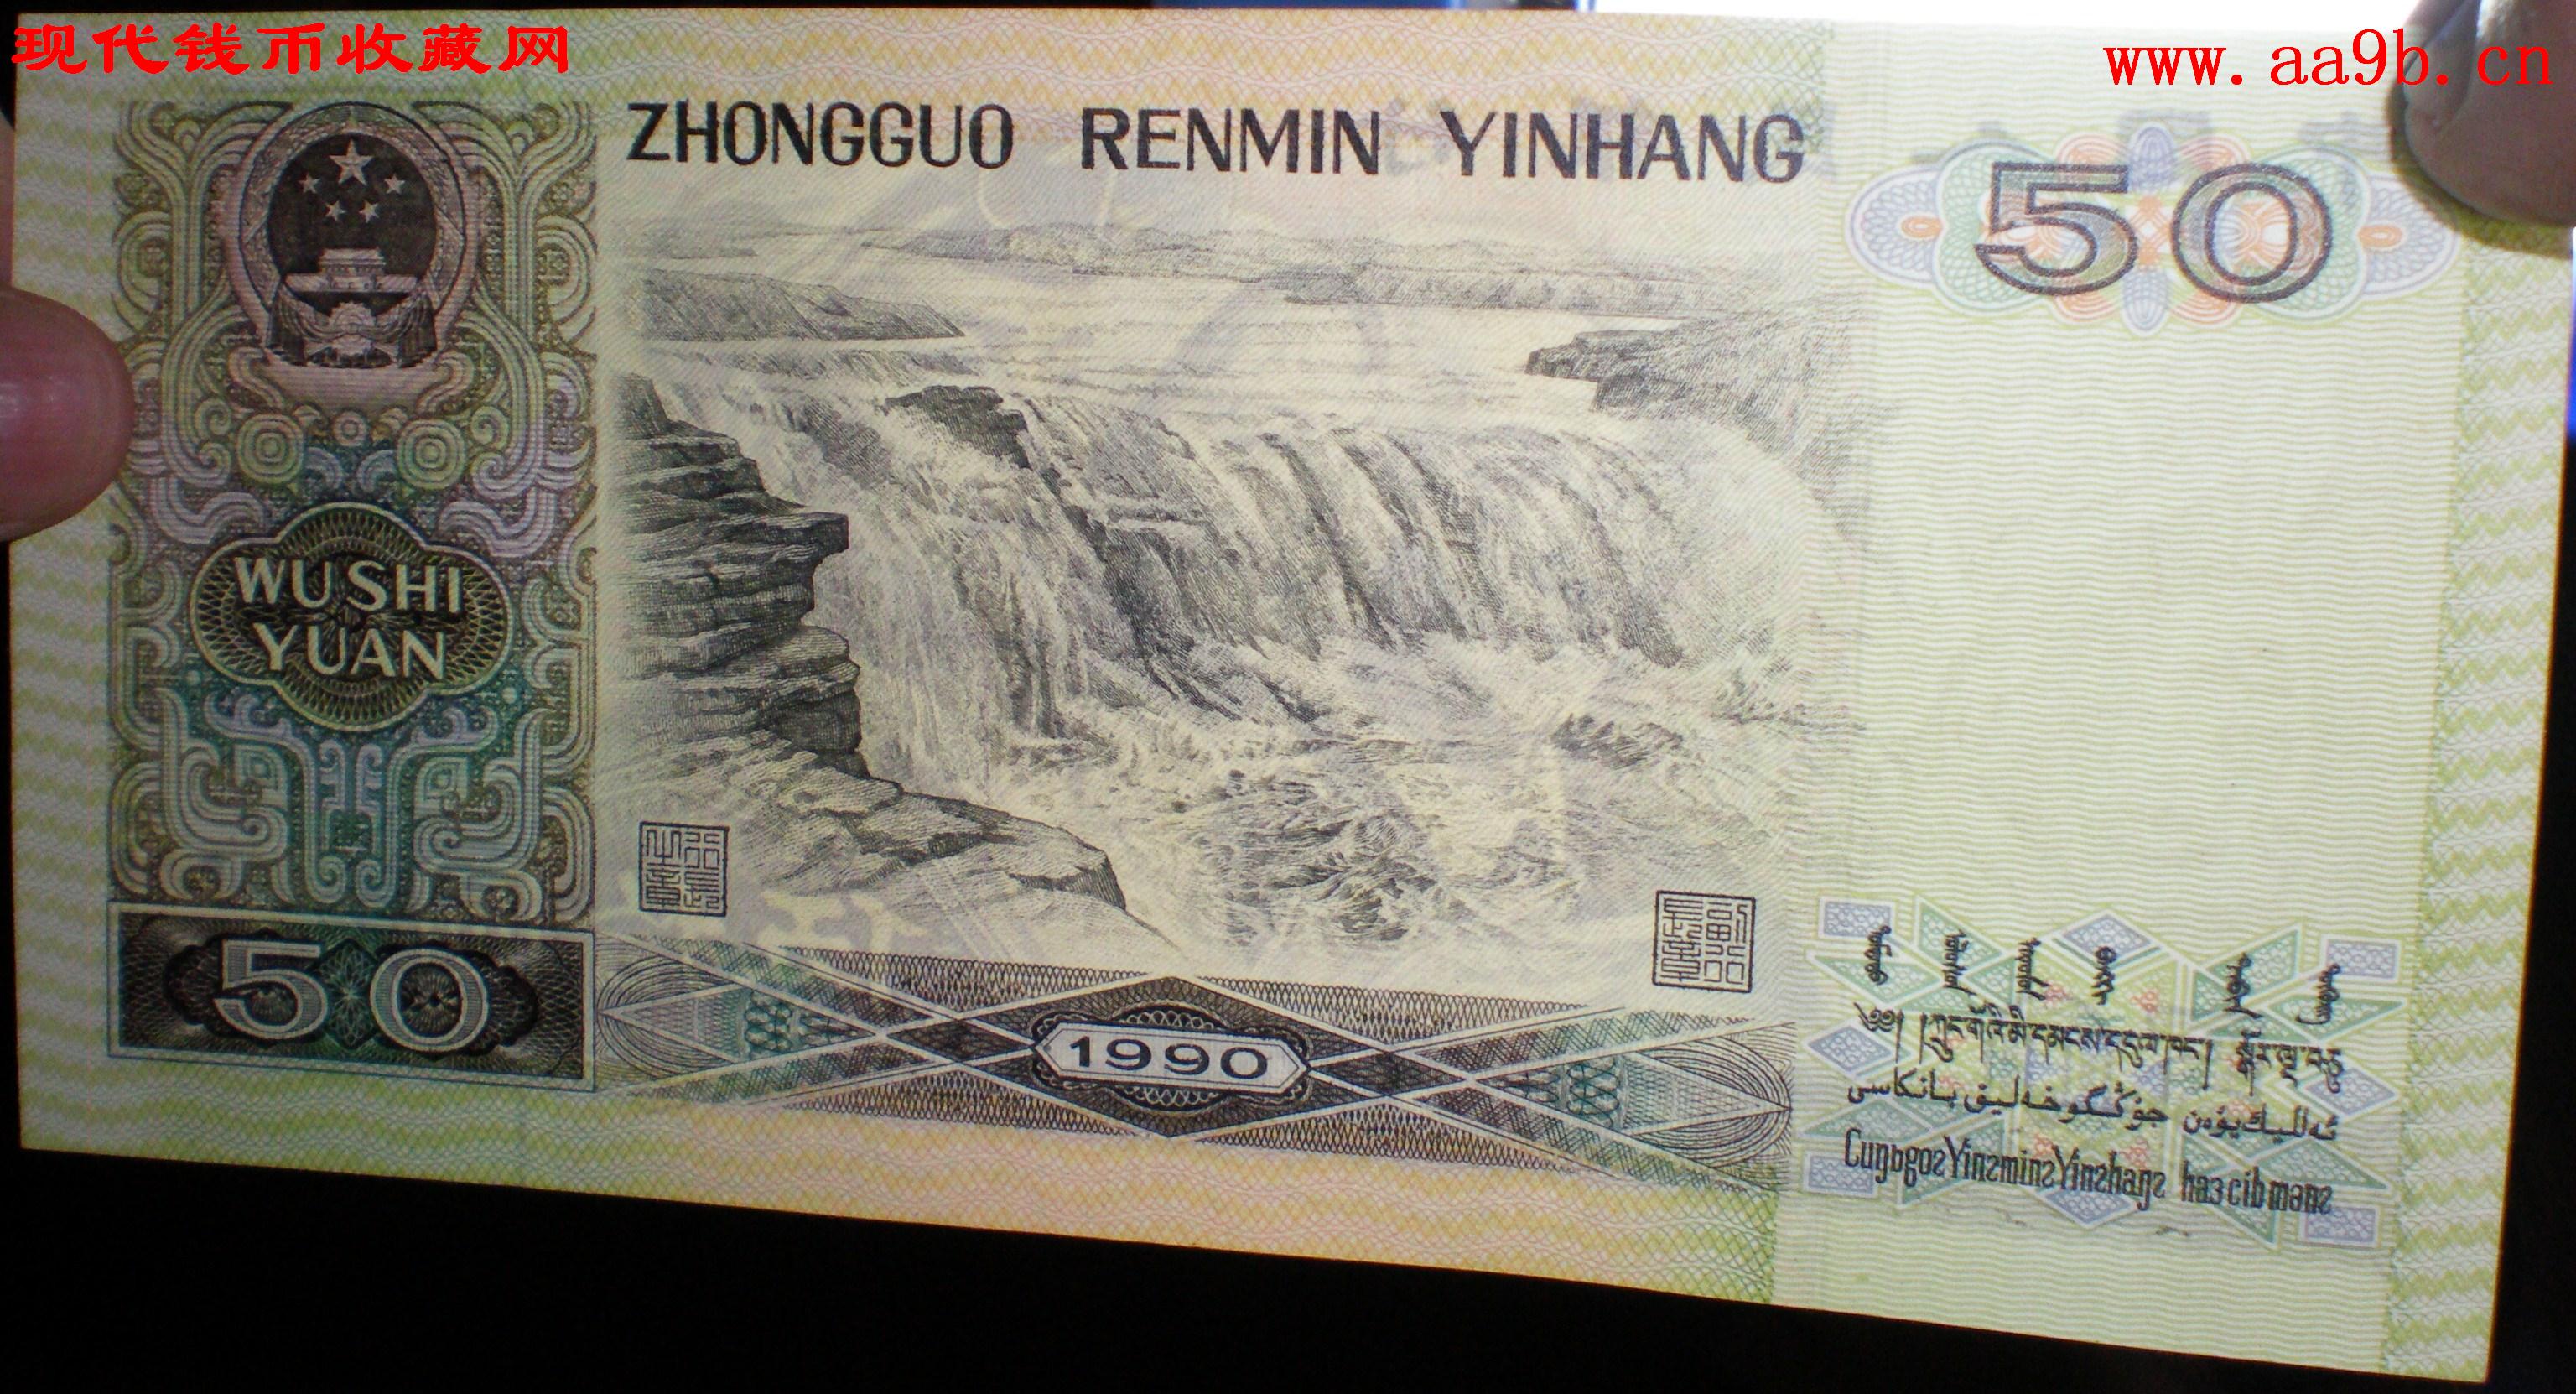 1990版50元错版人民币